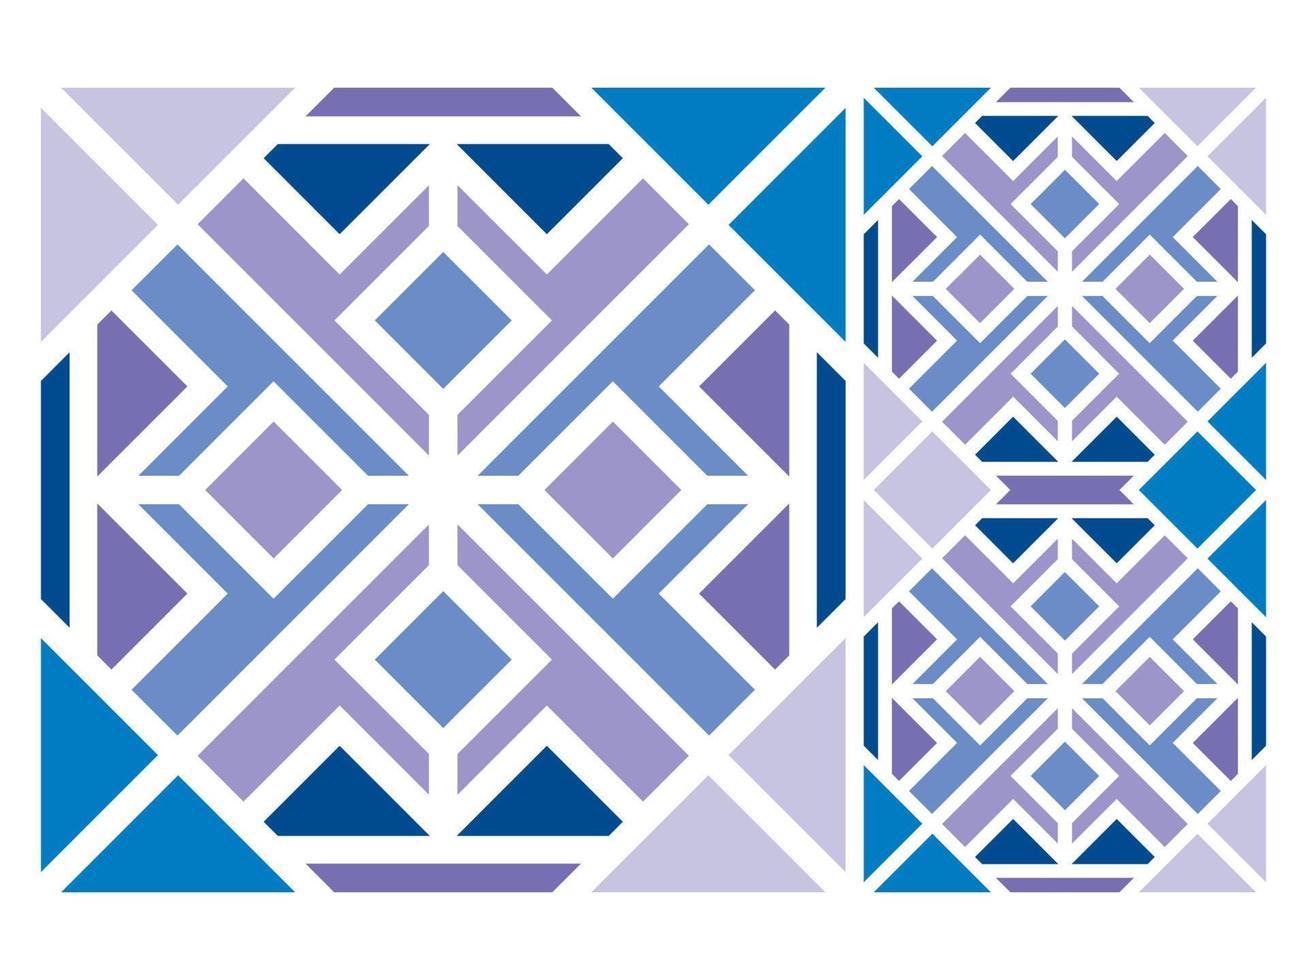 geometrisch modern patroon oosters. naadloos patroon. ontwerp voor stof, gordijn, achtergrond, tapijt, behang, kleding, inwikkeling, batik, stof, vectorillustratie. patroon stijl gratis vector